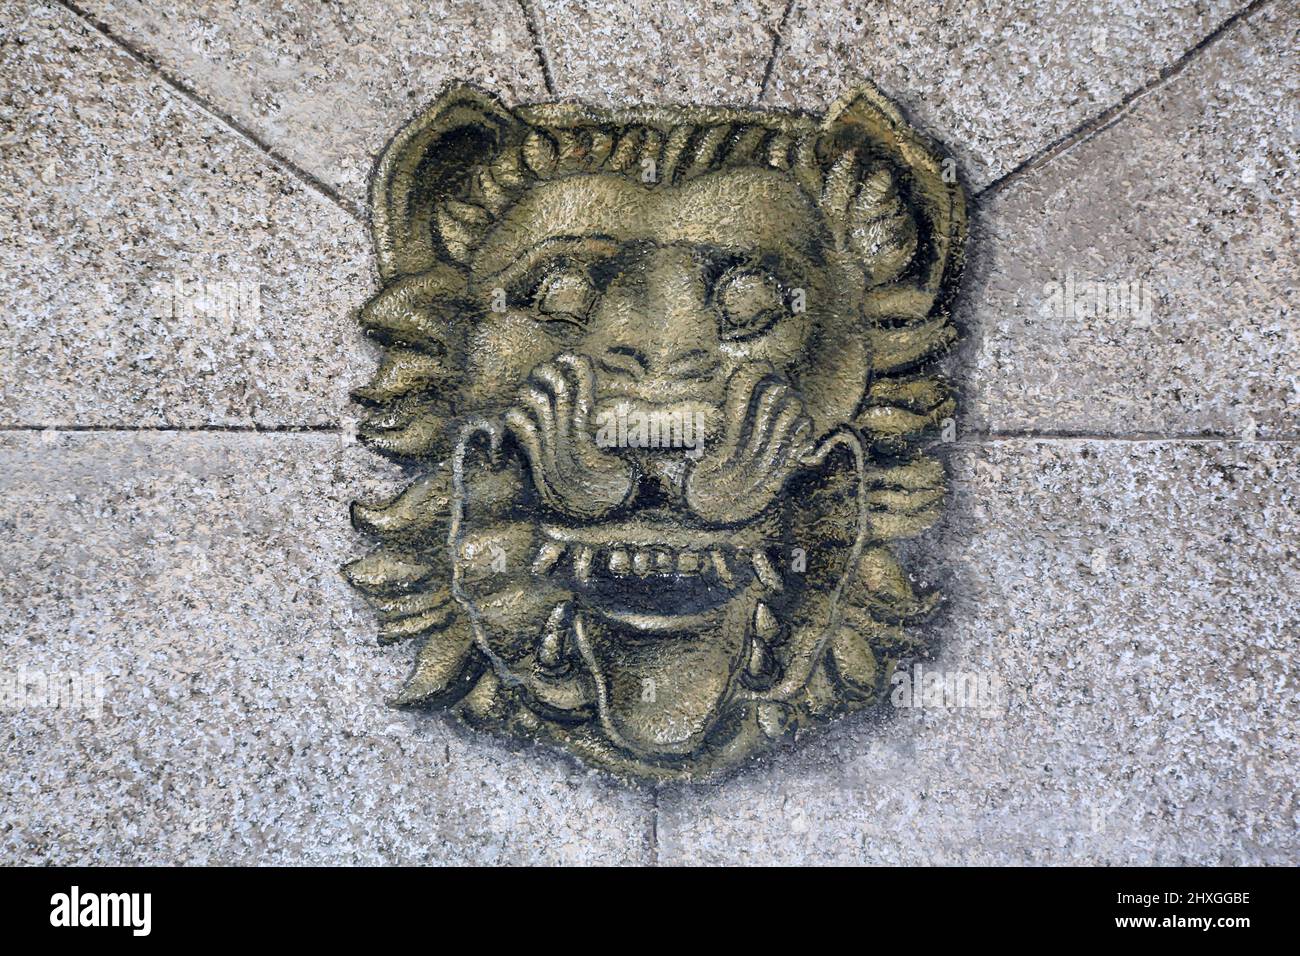 Peinture d'un lion sur un mur. Saint-Gervais-les-Bains. Haute-Savoie. Auvergne-Rhône-Alpes. Haute-Savoie. France. Stock Photo